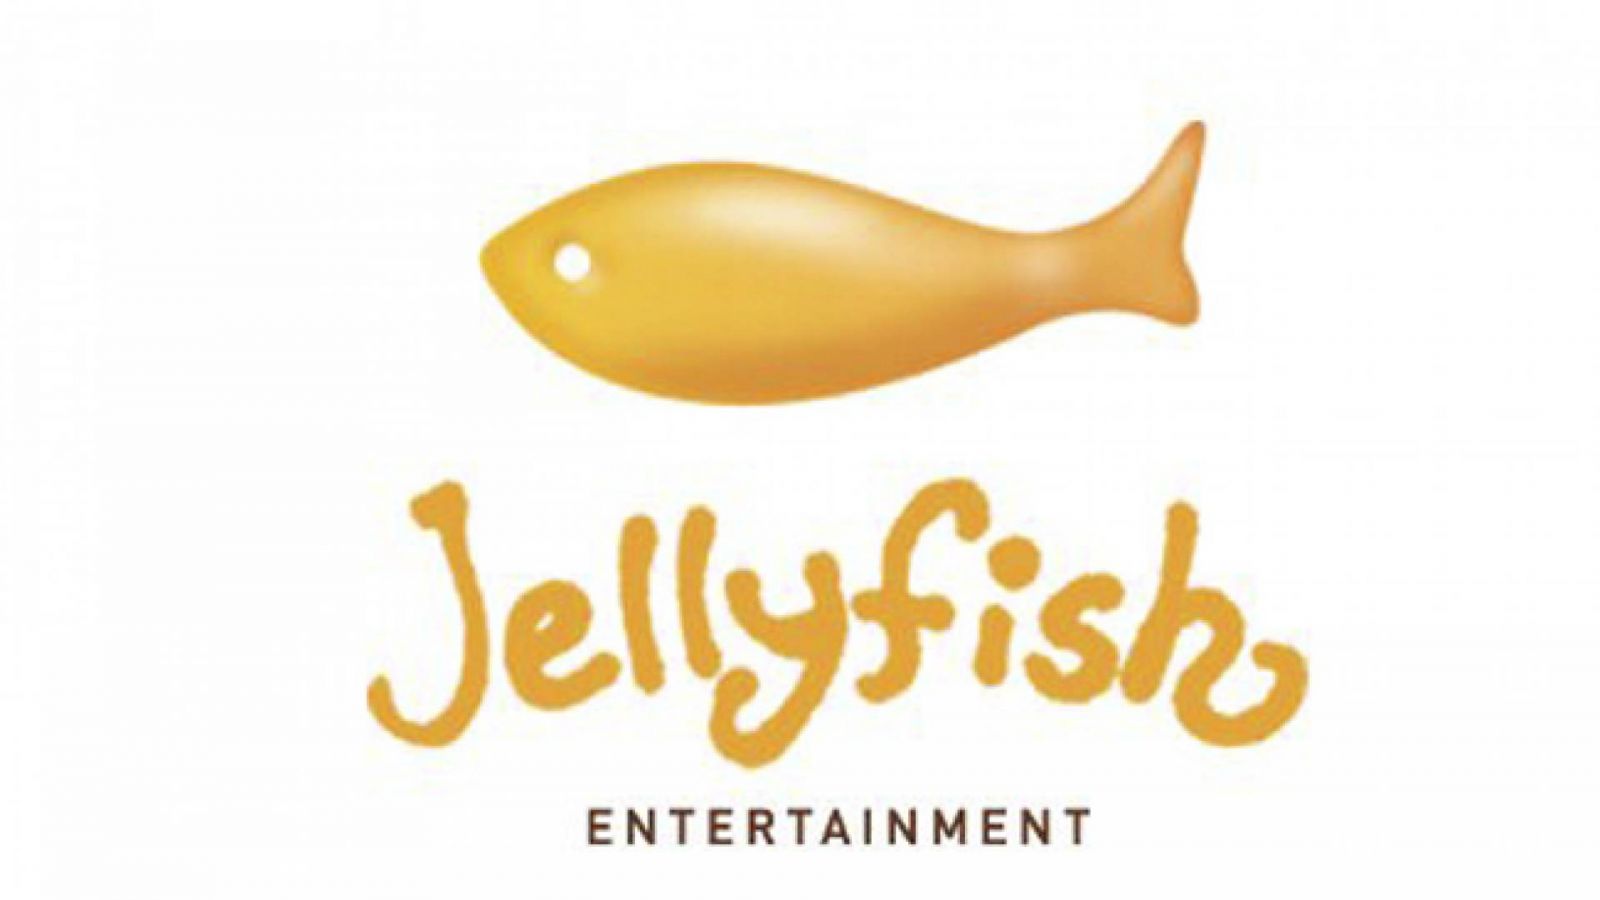 Jellyfish Entertainmentin joulualbumi © Jellyfish Entertainment